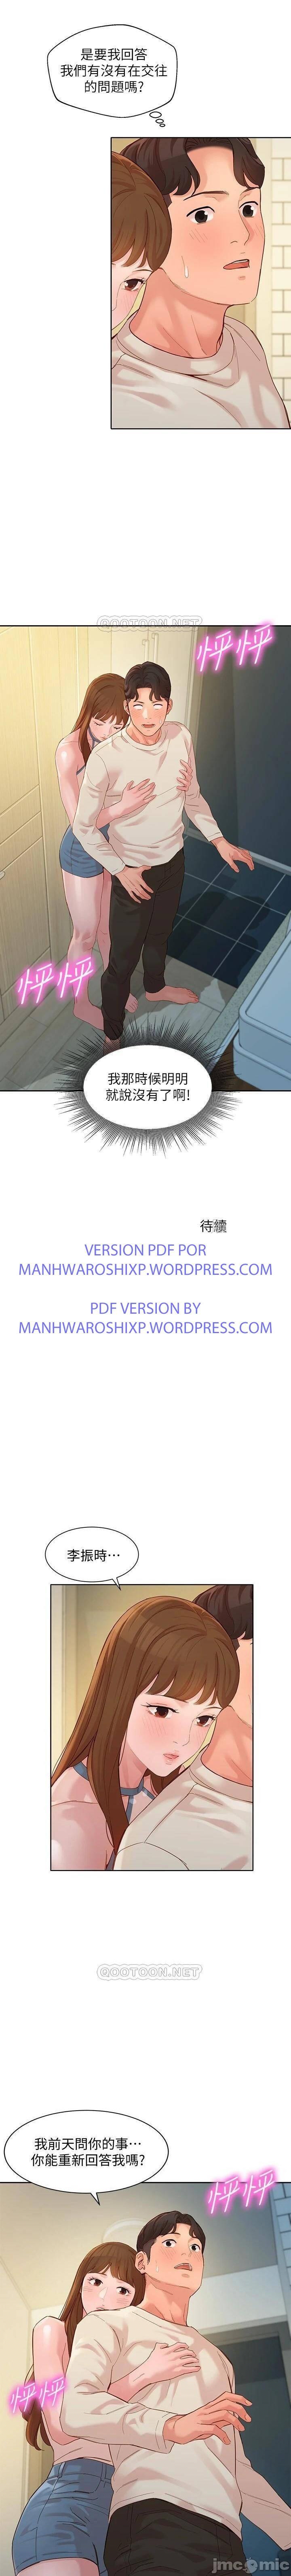 女神寫真 31-54 CHI manhwaroshi.blogspot.com 242